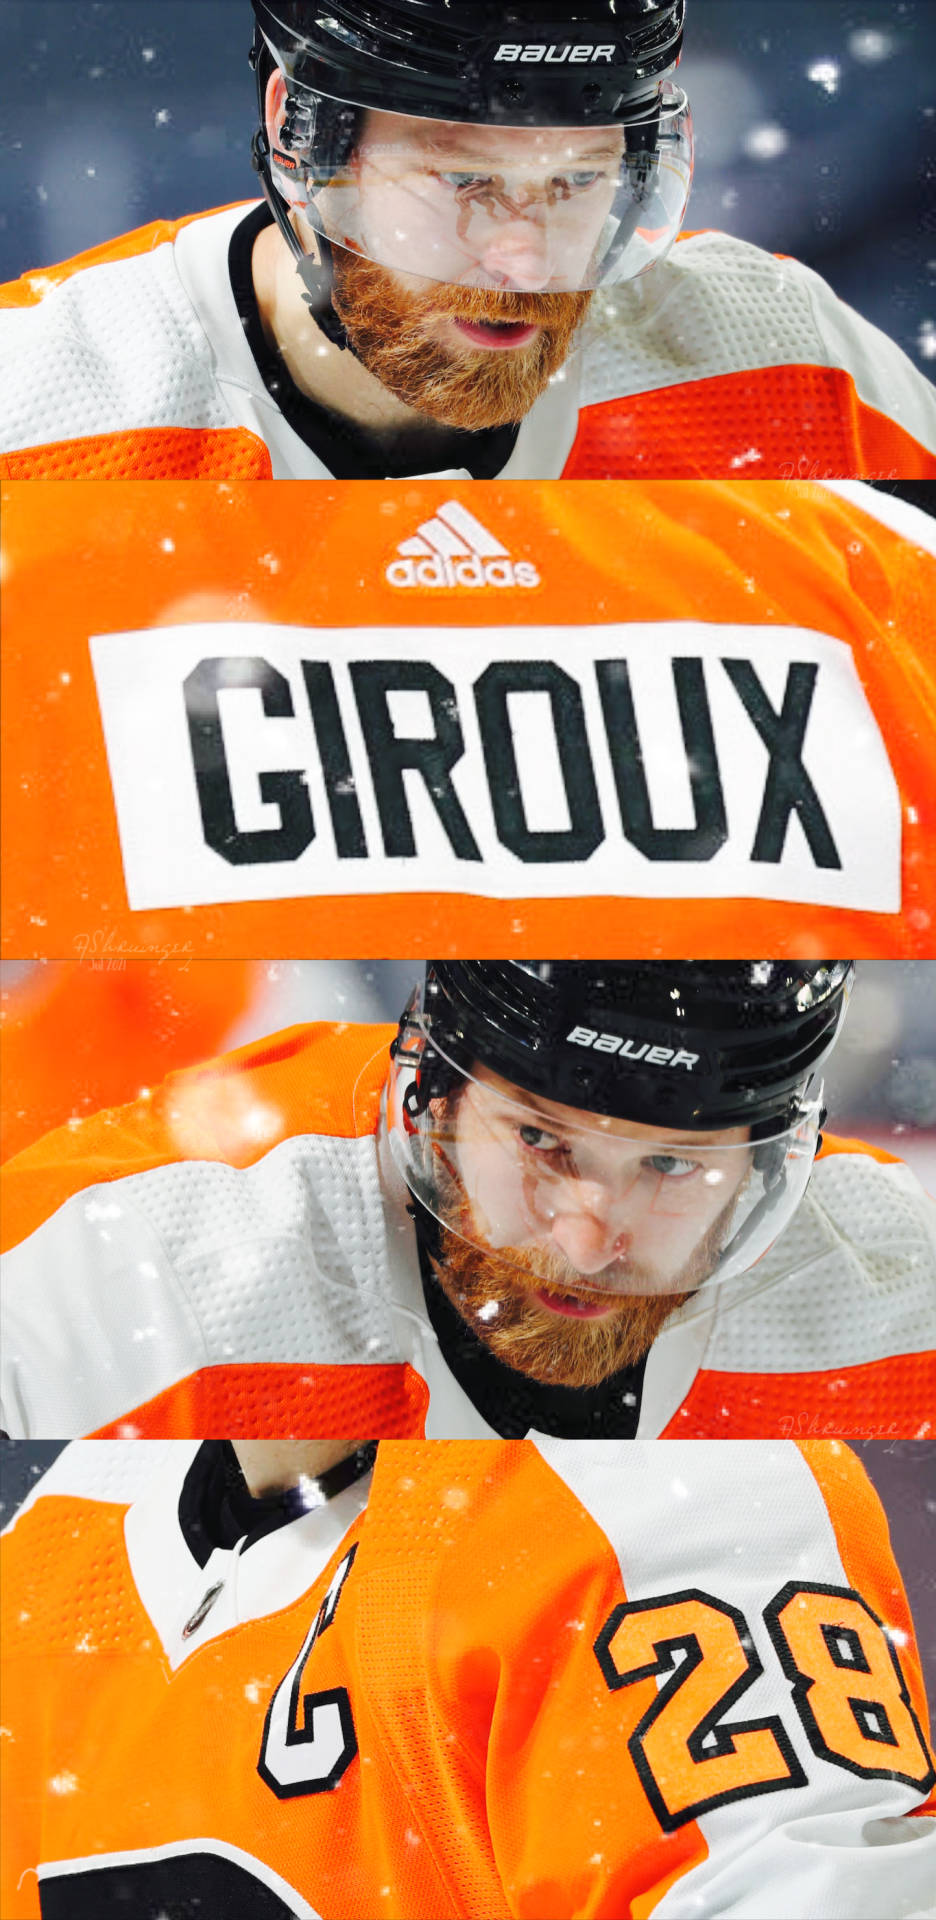 Claude Giroux Adidas National Hockey League Background